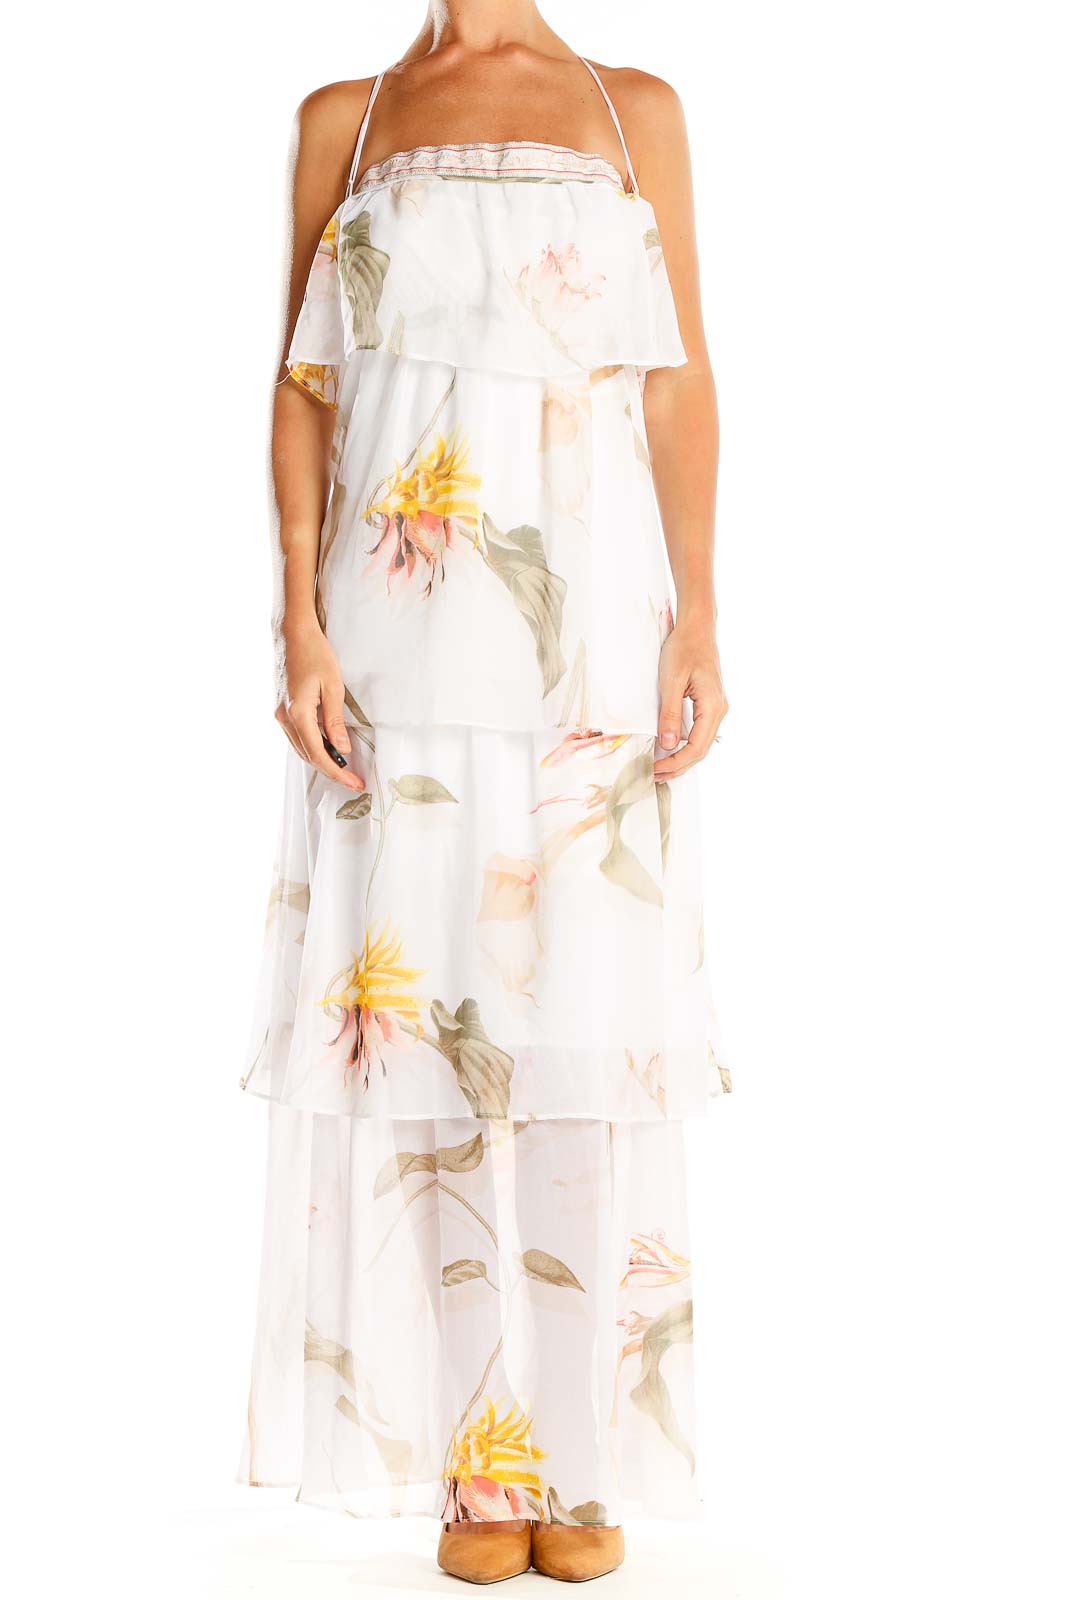 White Floral Print Ruffle Bohemian Column Dress Front